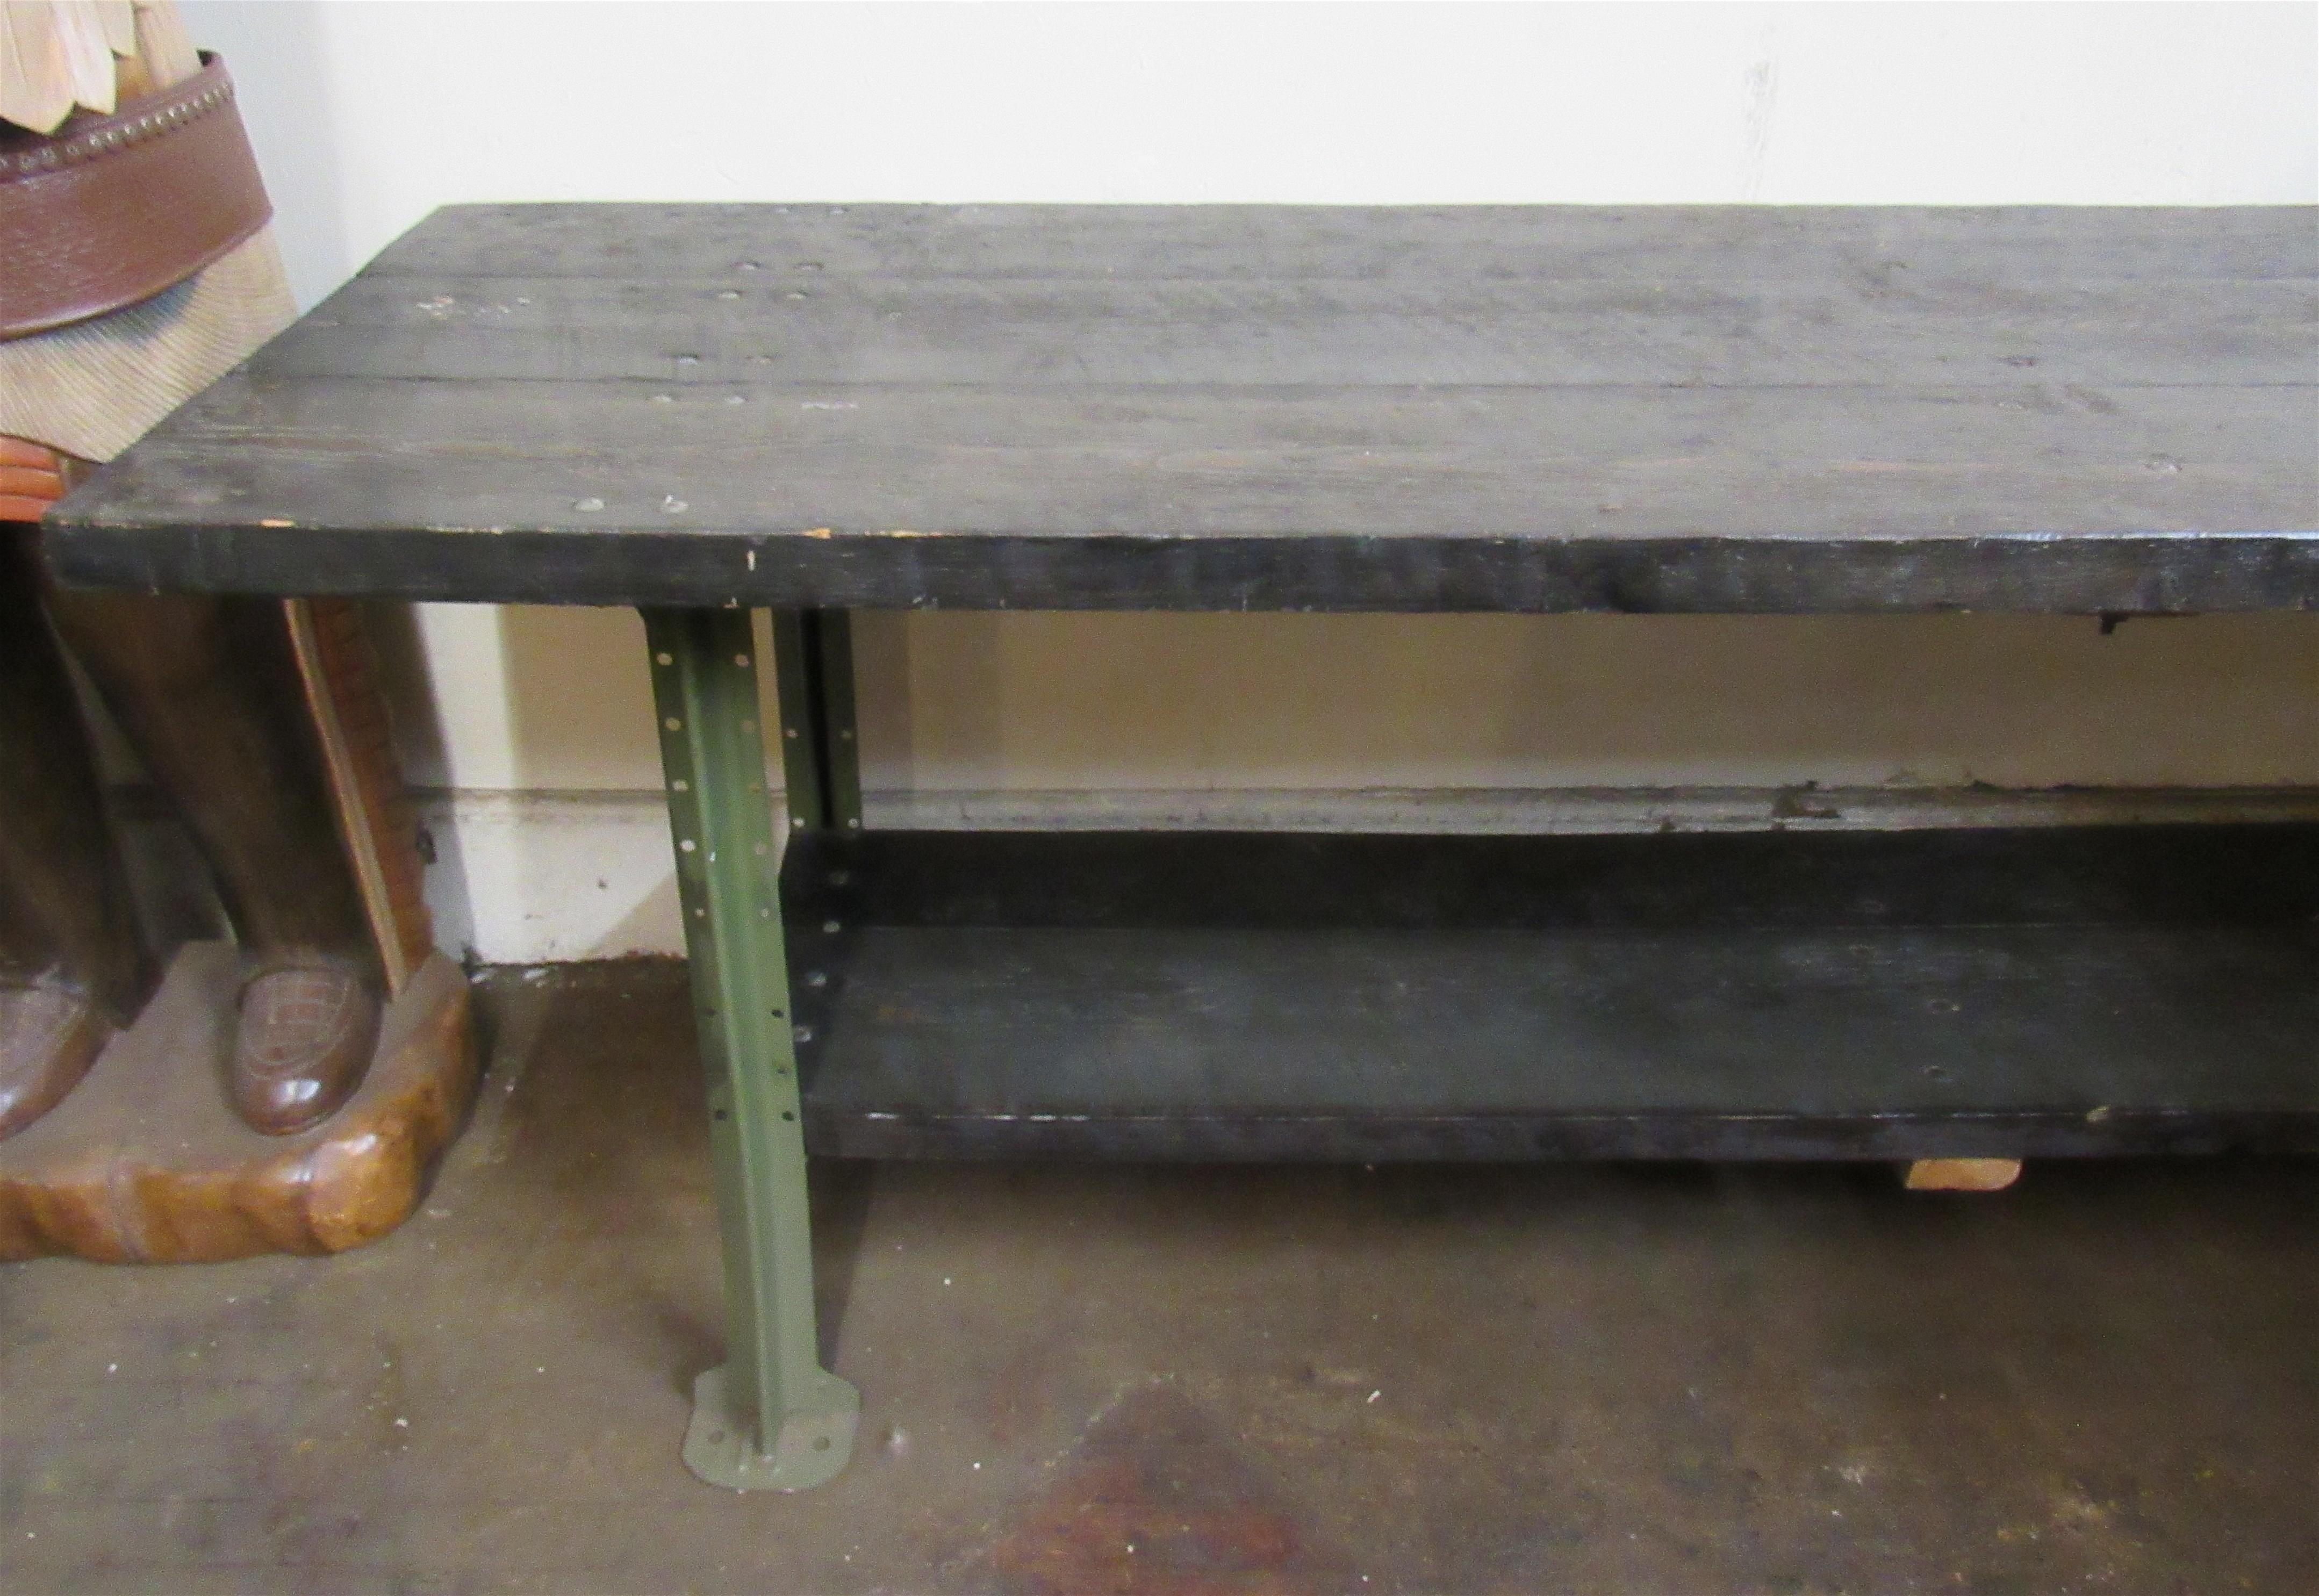 Table d'atelier industrielle de huit pieds de long, avec d'épaisses dalles de bois sur un solide cadre en fer. Idéal pour les grandes cuisines.
Veuillez confirmer le lieu NY ou NJ